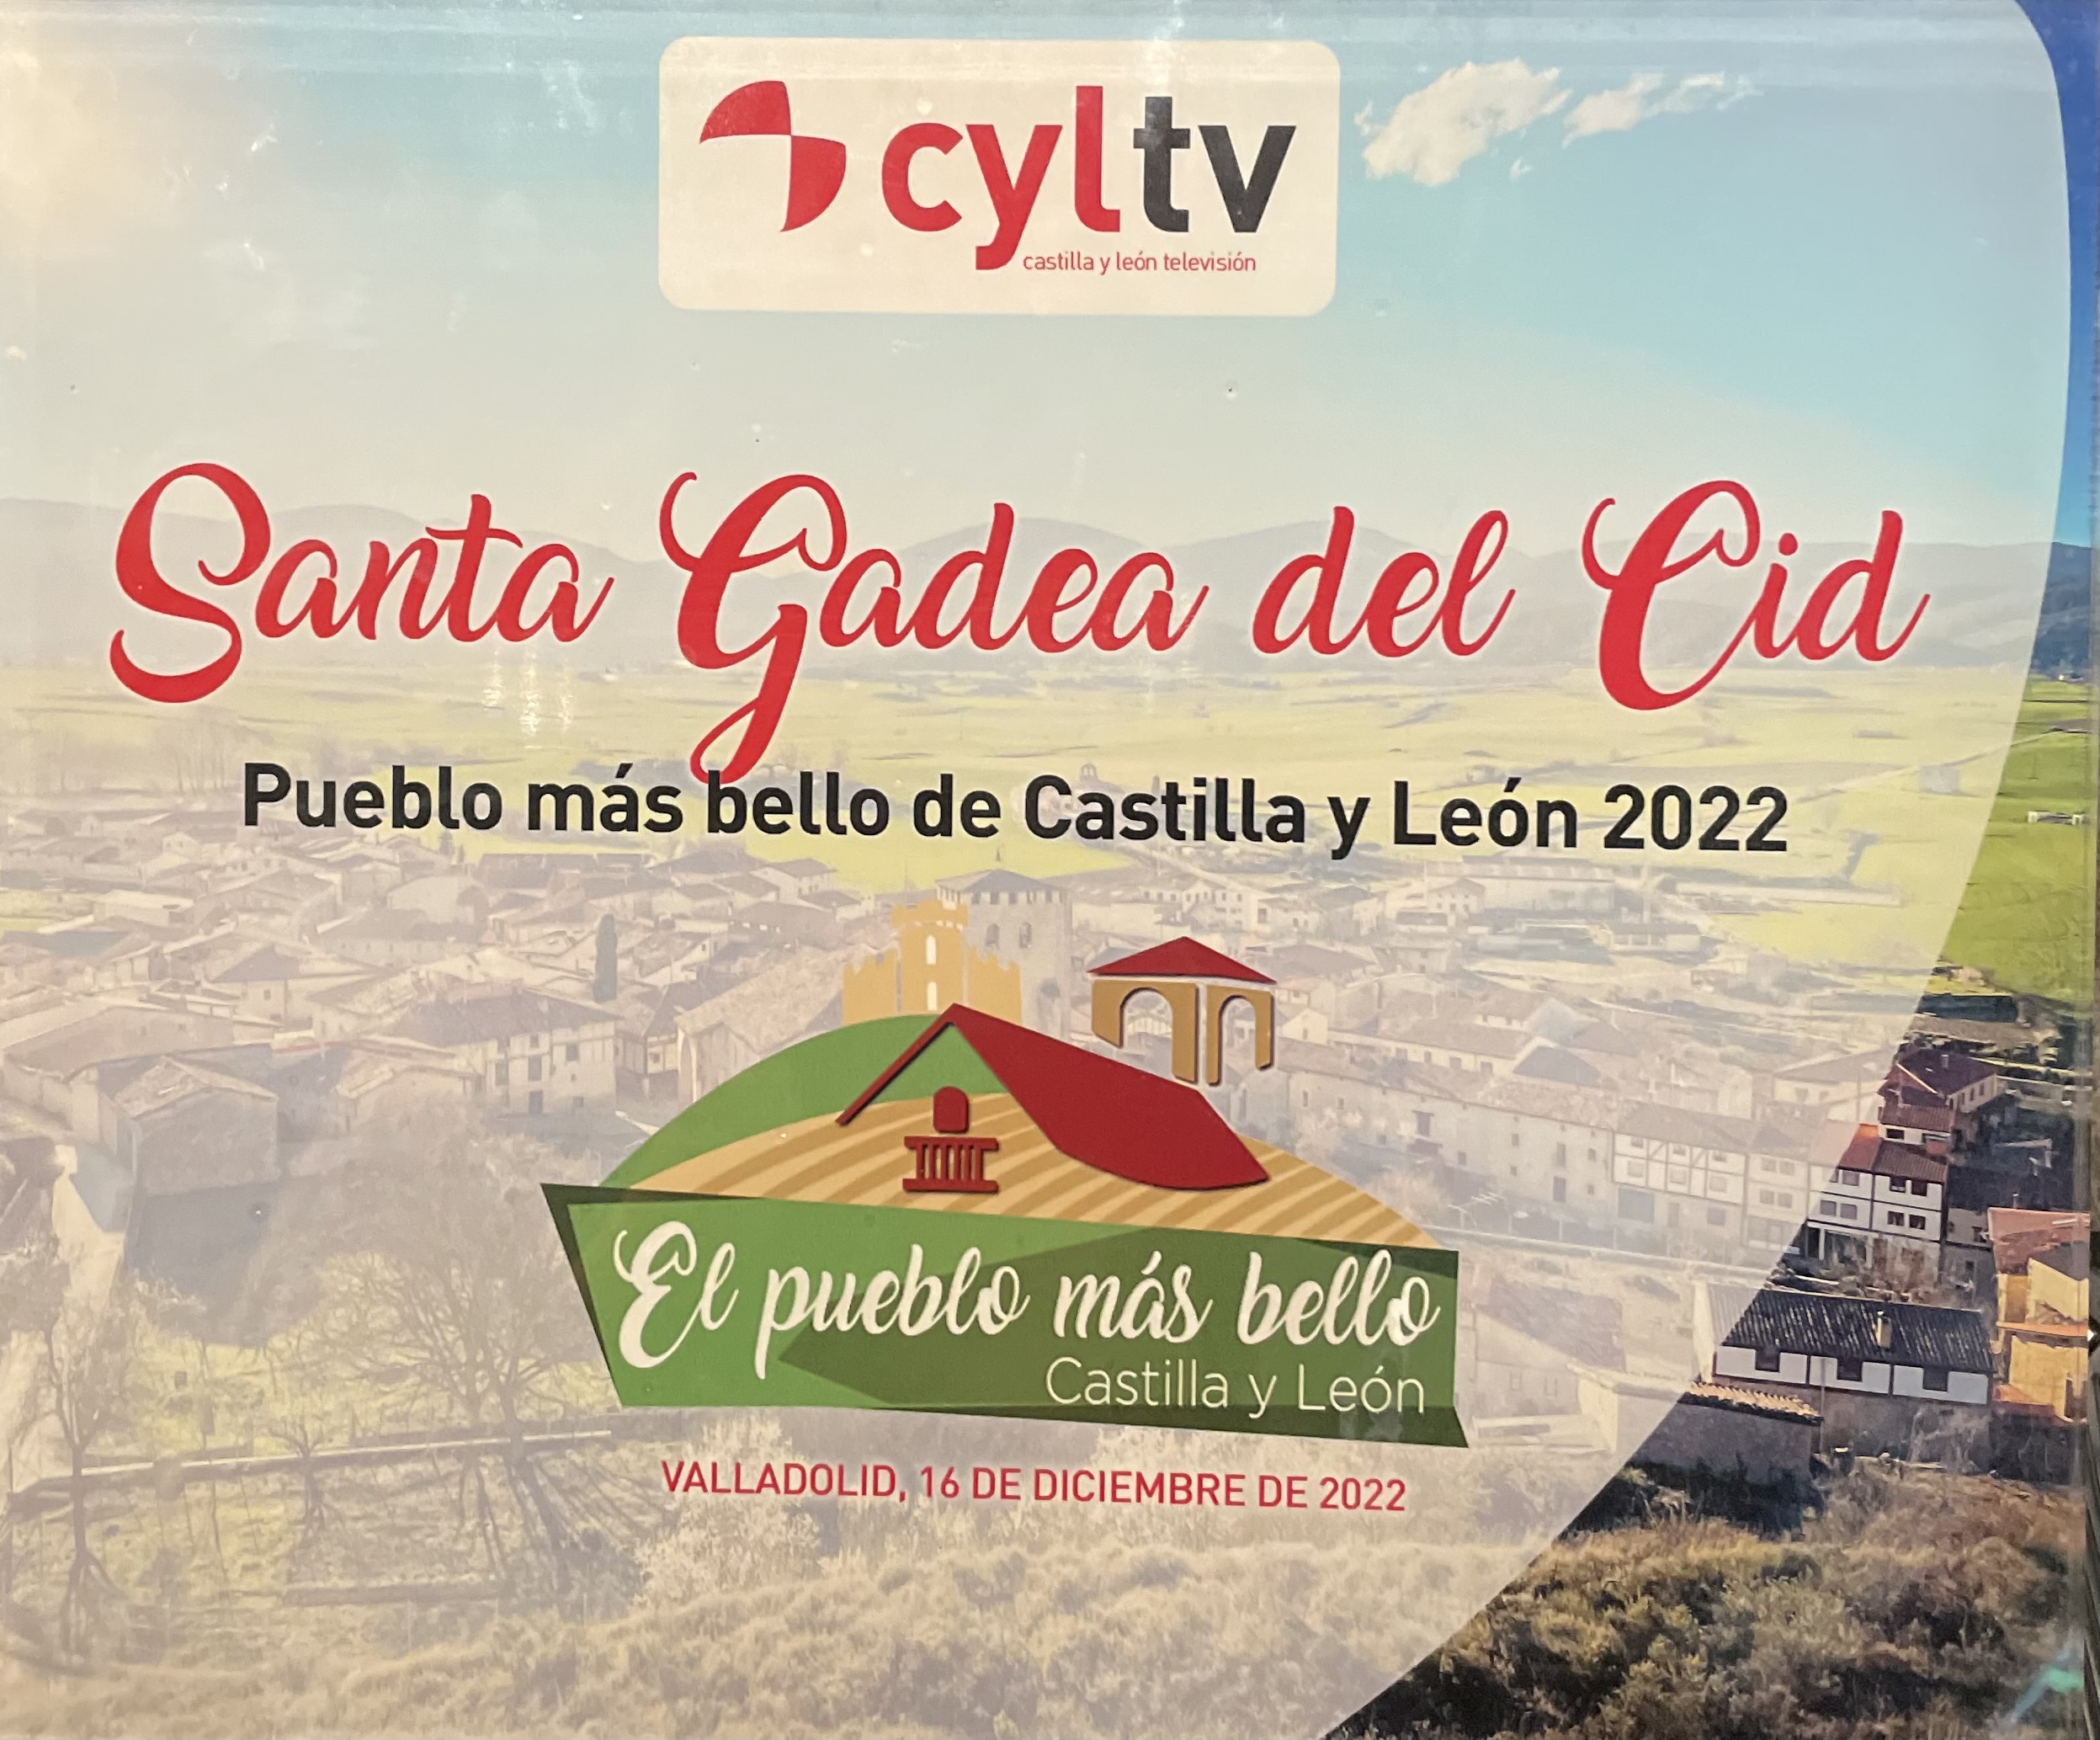 Santa Gadea del Cid se convierte en El Pueblo Más Bello de Castilla y León 2022